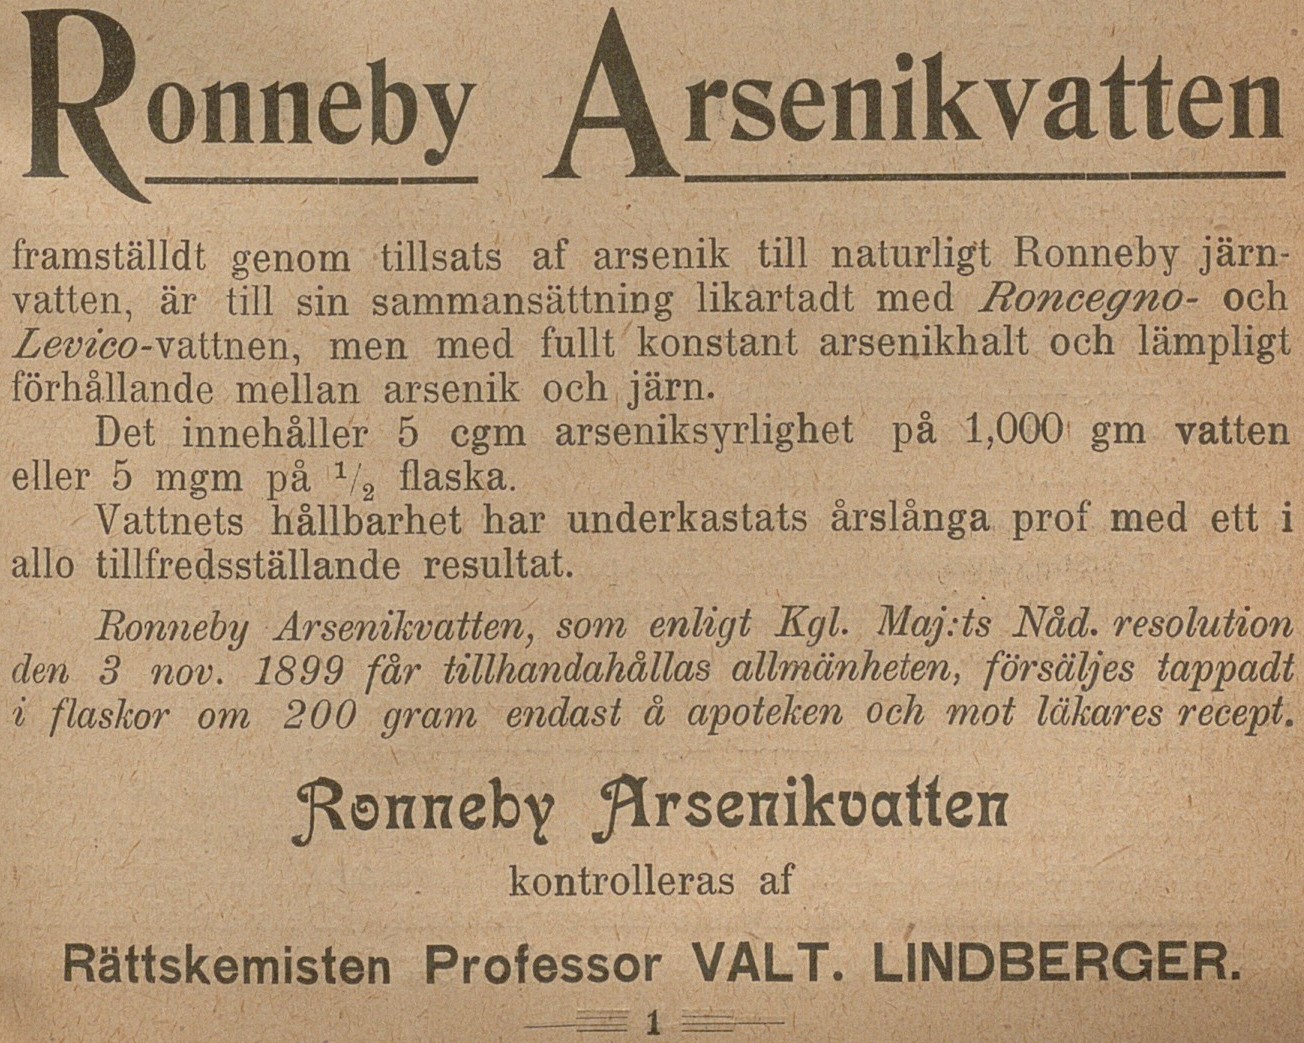 Utsnitt ur gulnad tidskrift med texten: Ronneby Arsenikvatten framställt genom tillsats av arsenik.